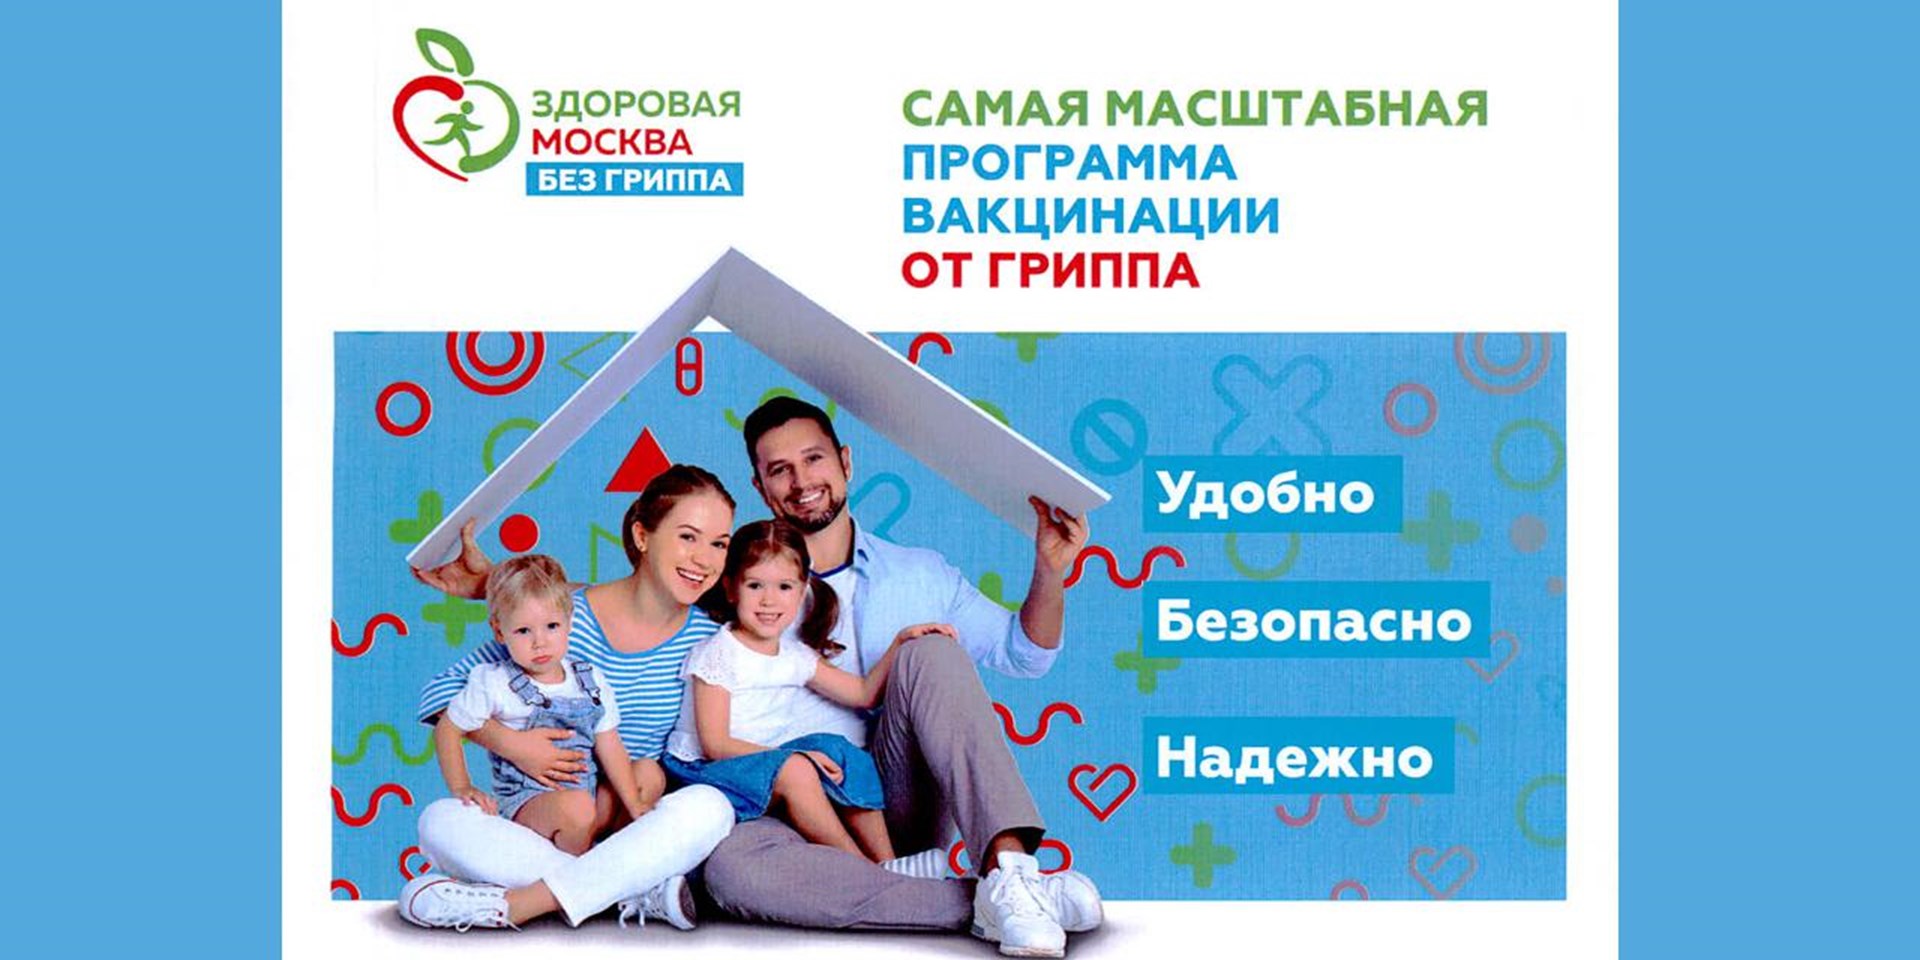 02.09.2020 Москва. Масштабная программа вакцинации от гриппа